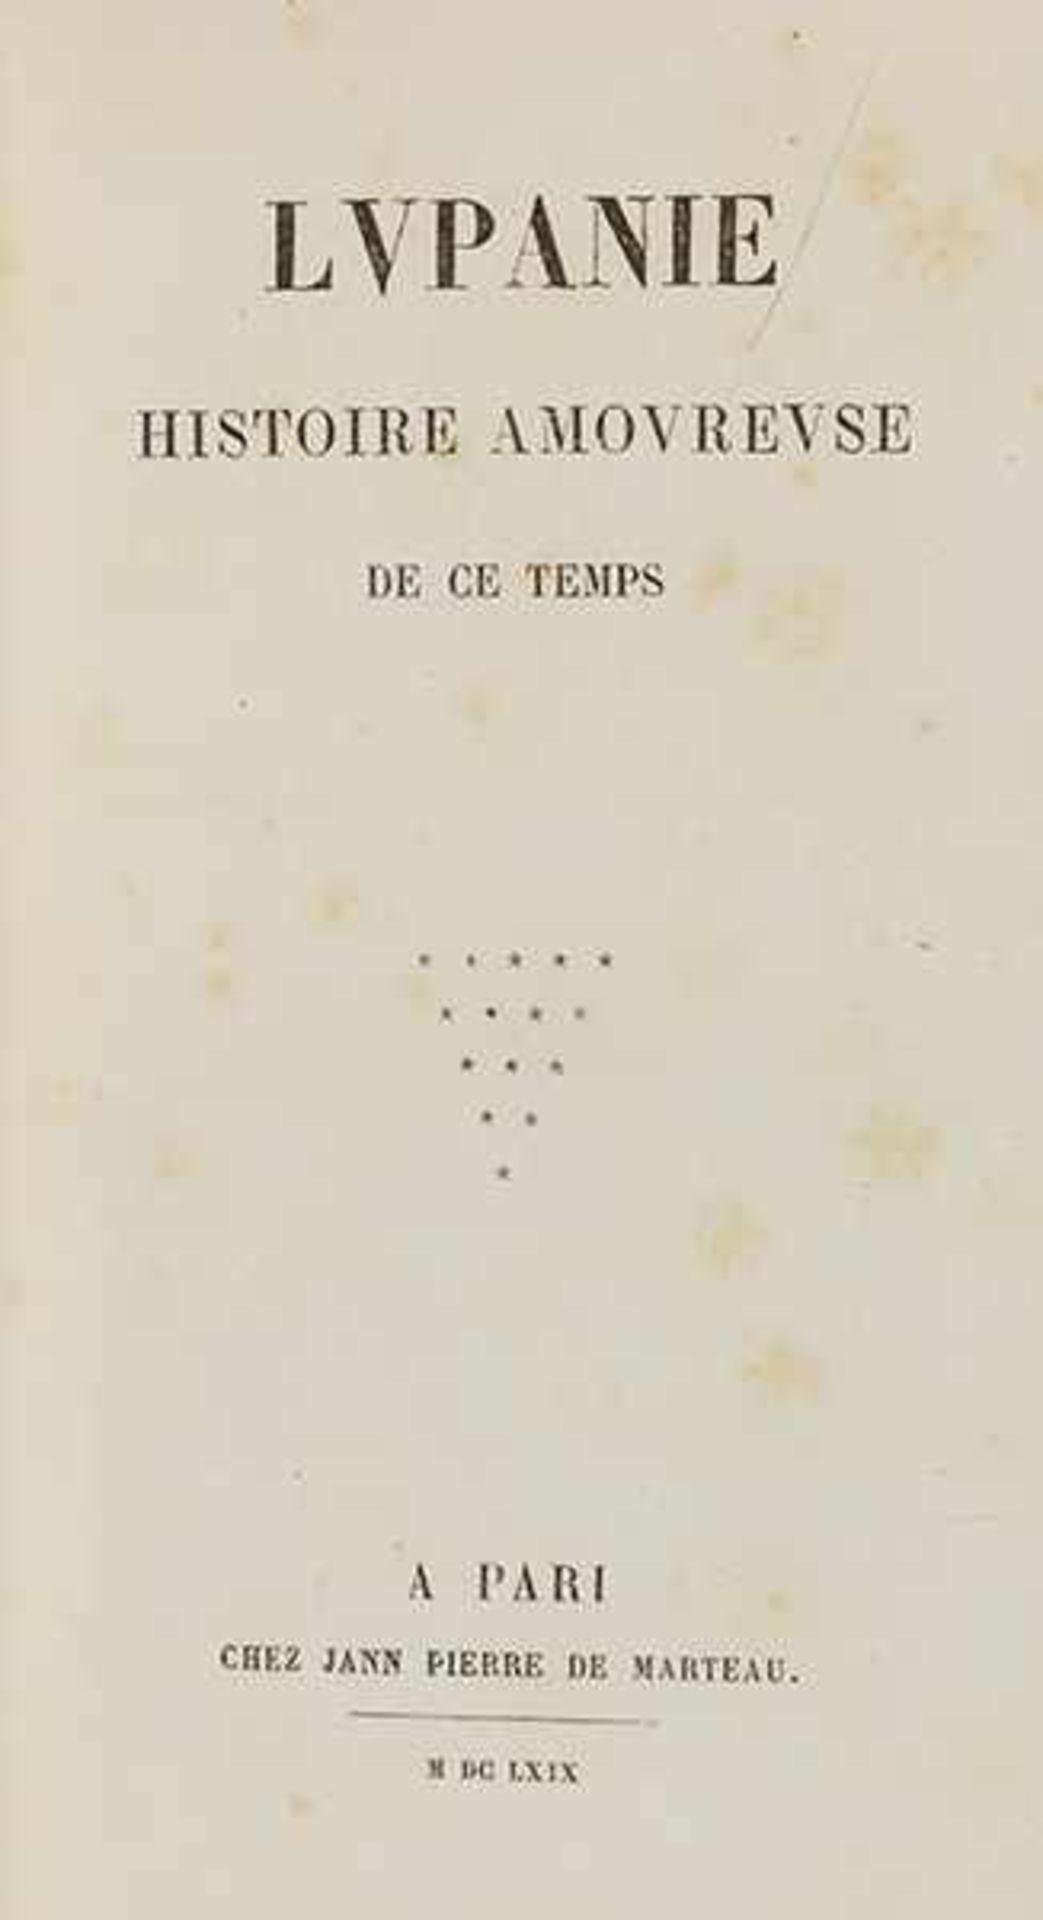 Blessebois, Pierre-Corneille. Lupanie. Histoire amoureuse de ce temps. Nachdruck der Ausgabe